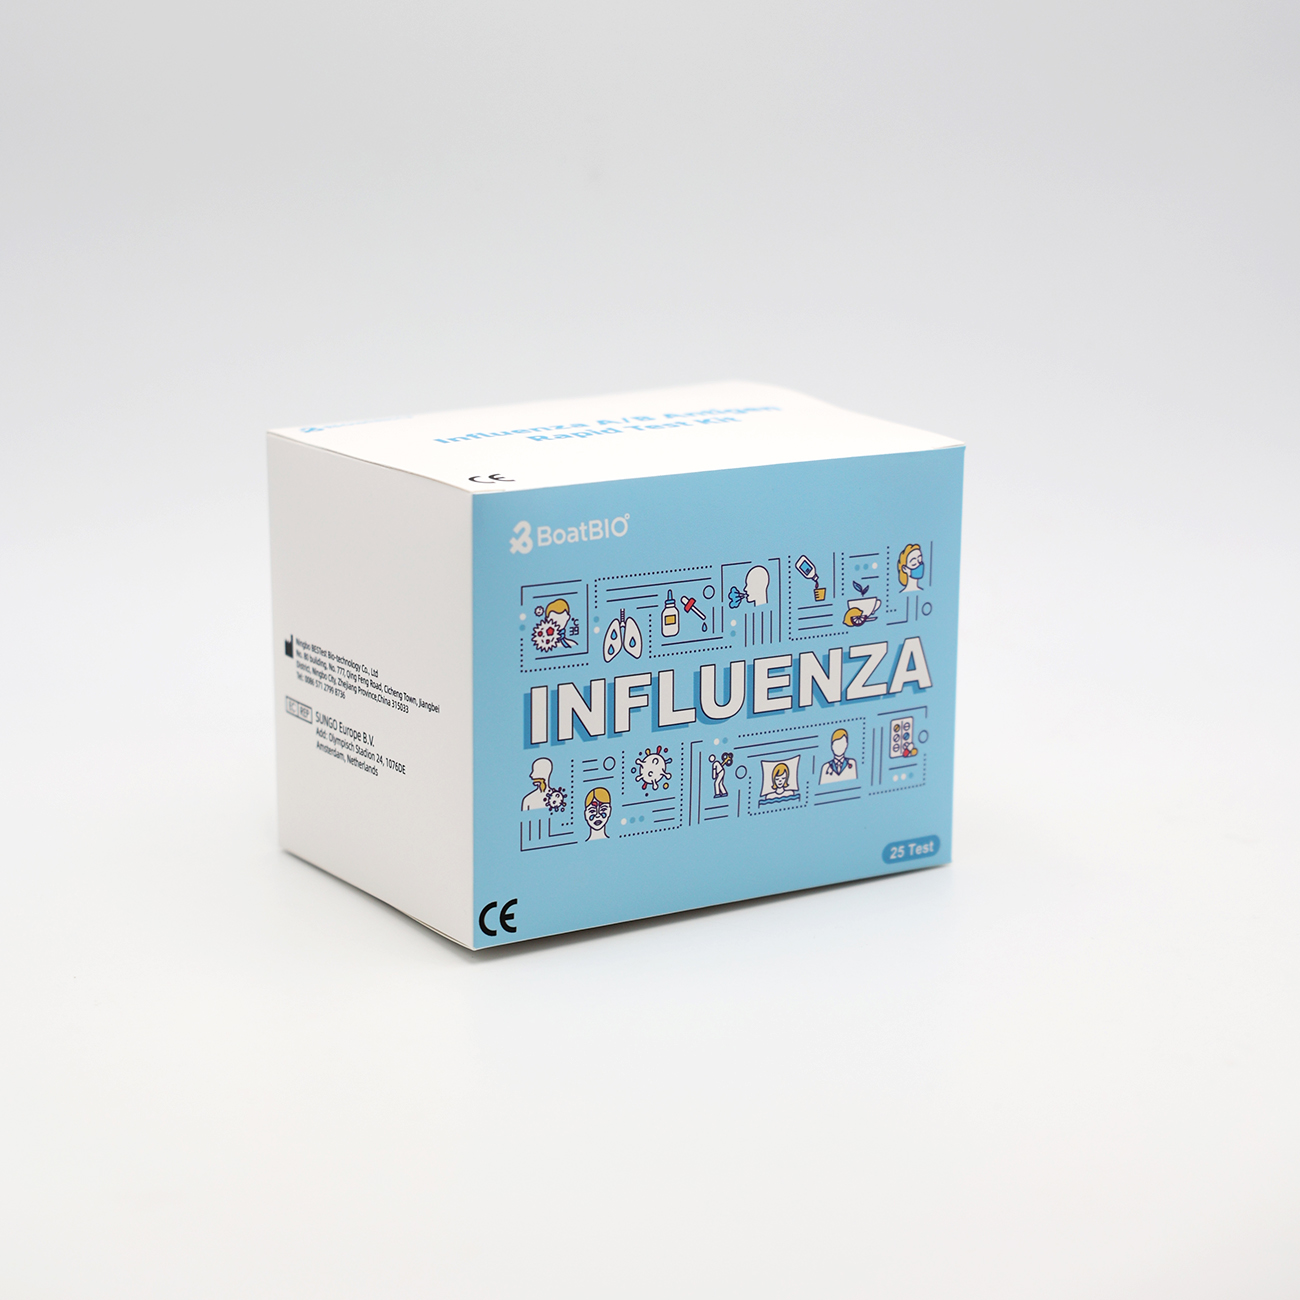 Influenza Rapid Test Kits